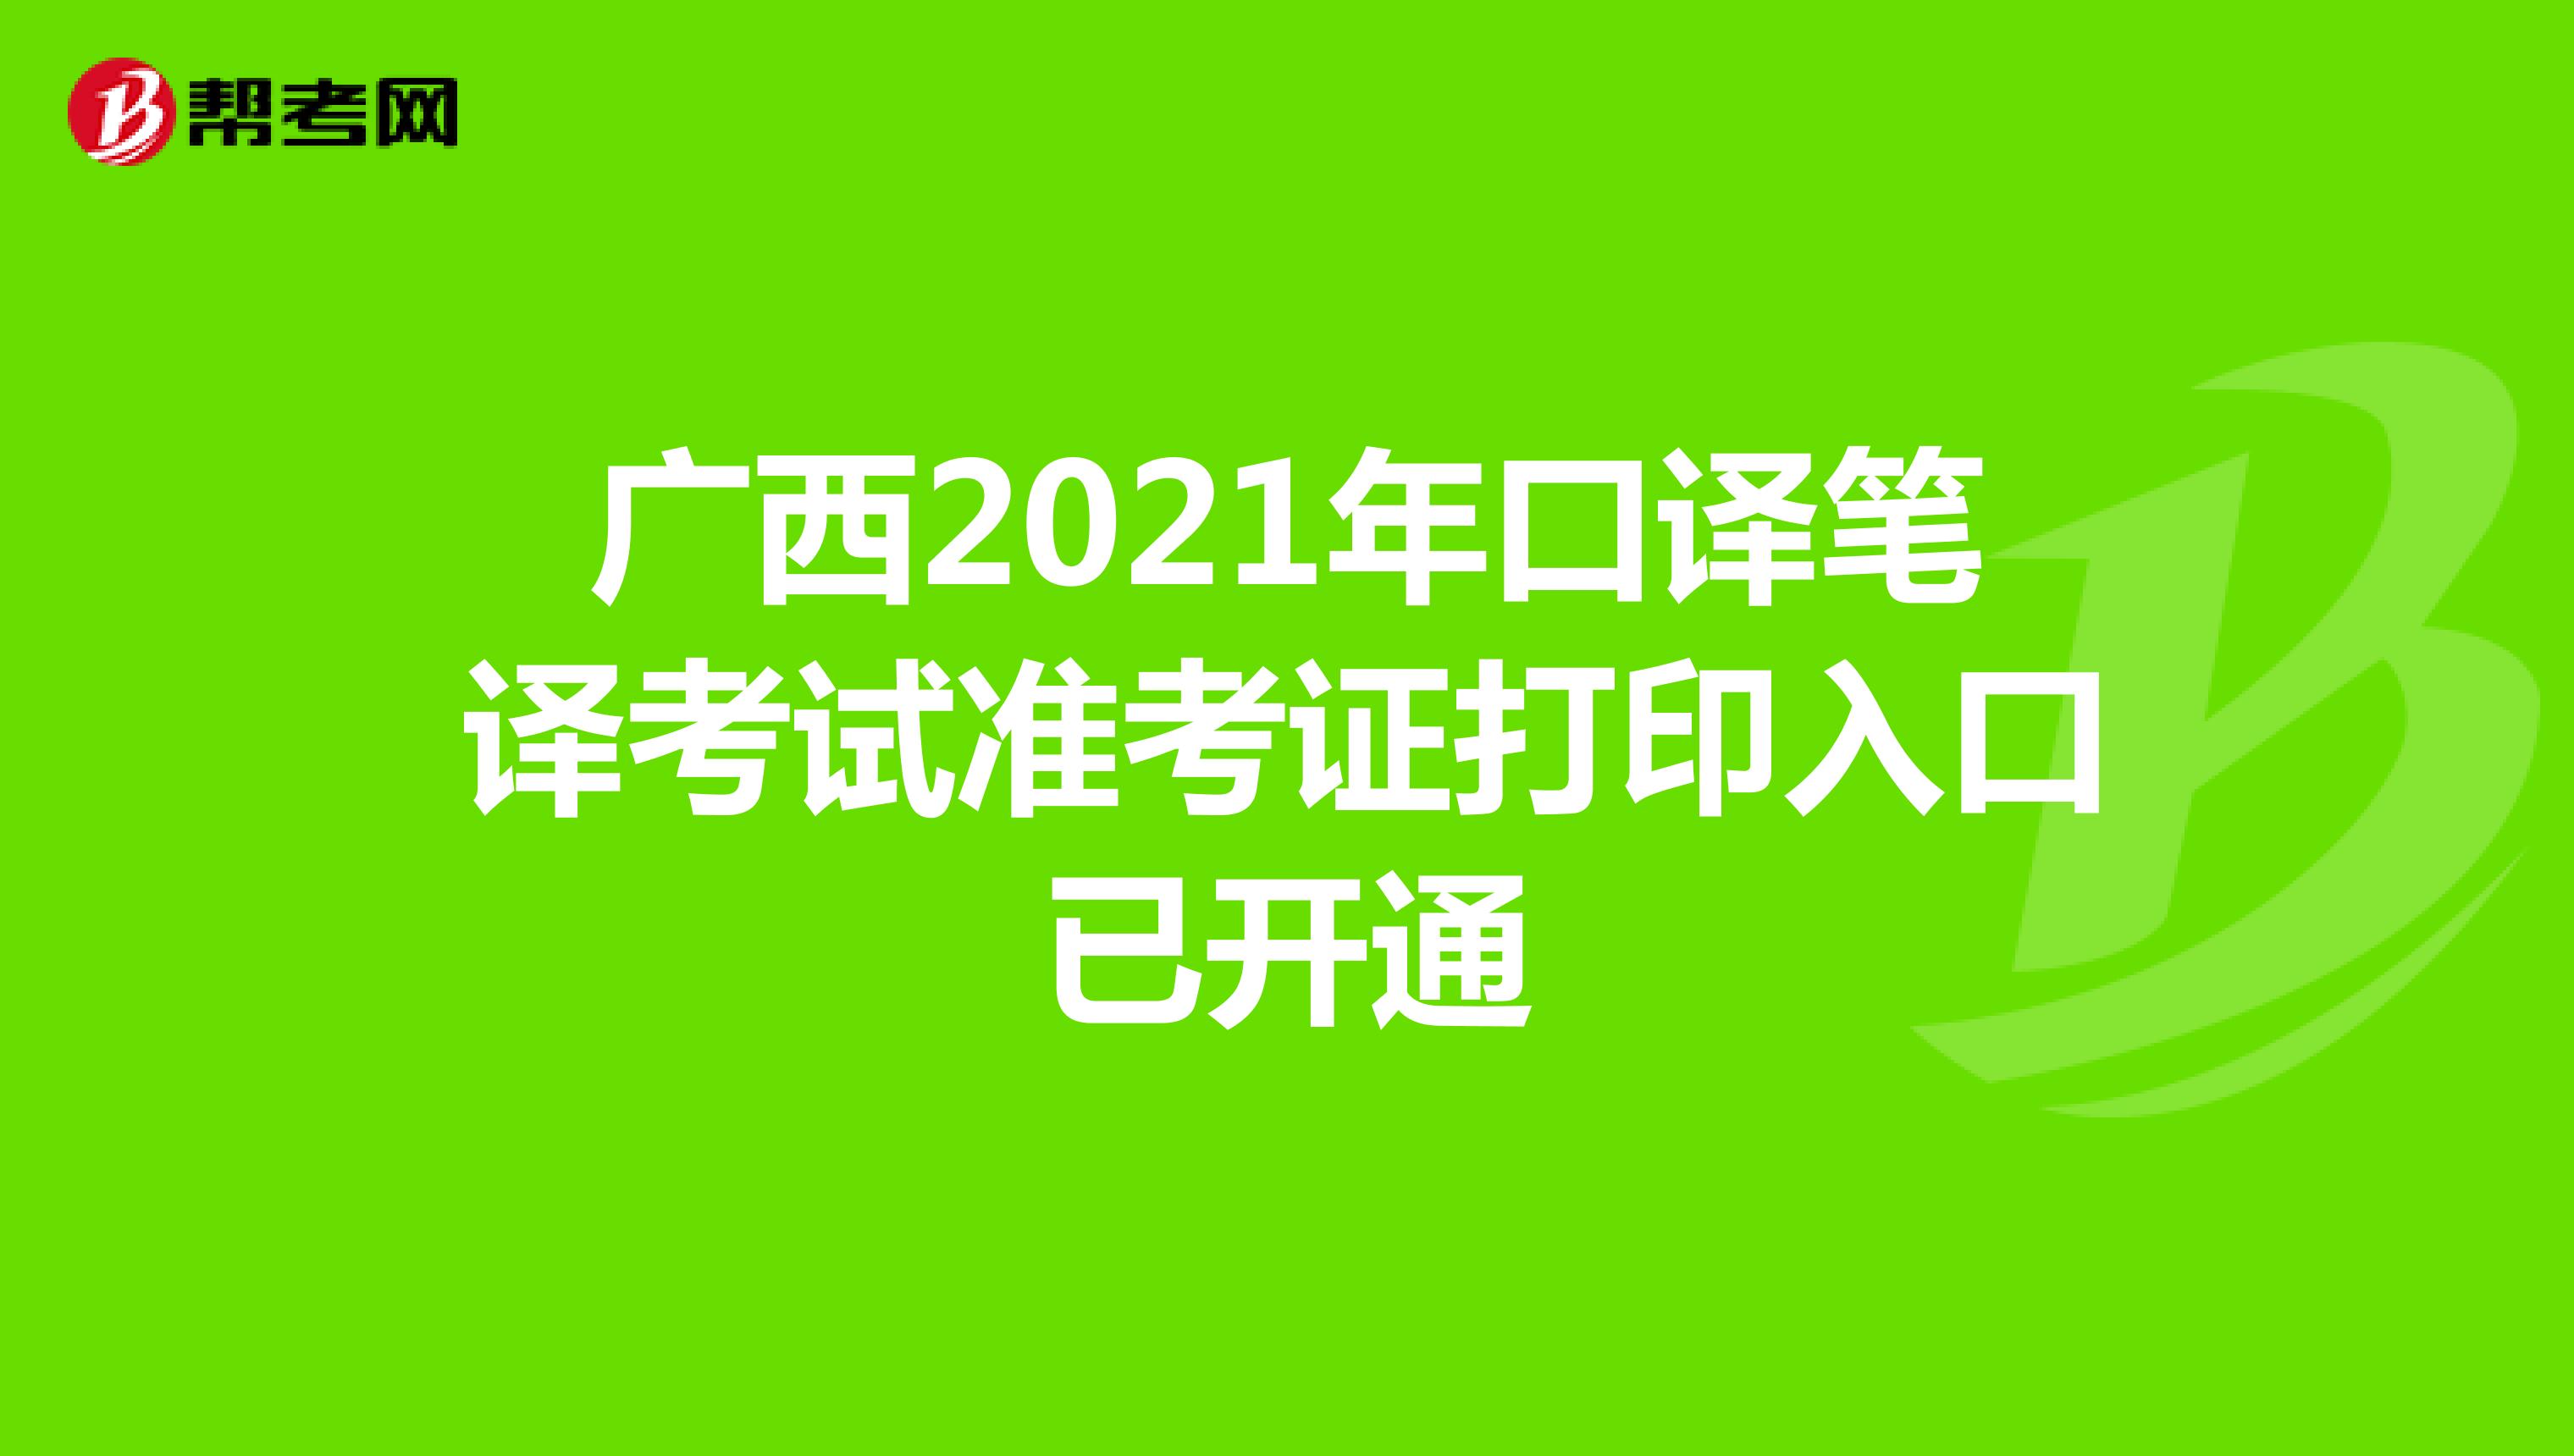 广西2021年口译笔译考试准考证打印入口已开通